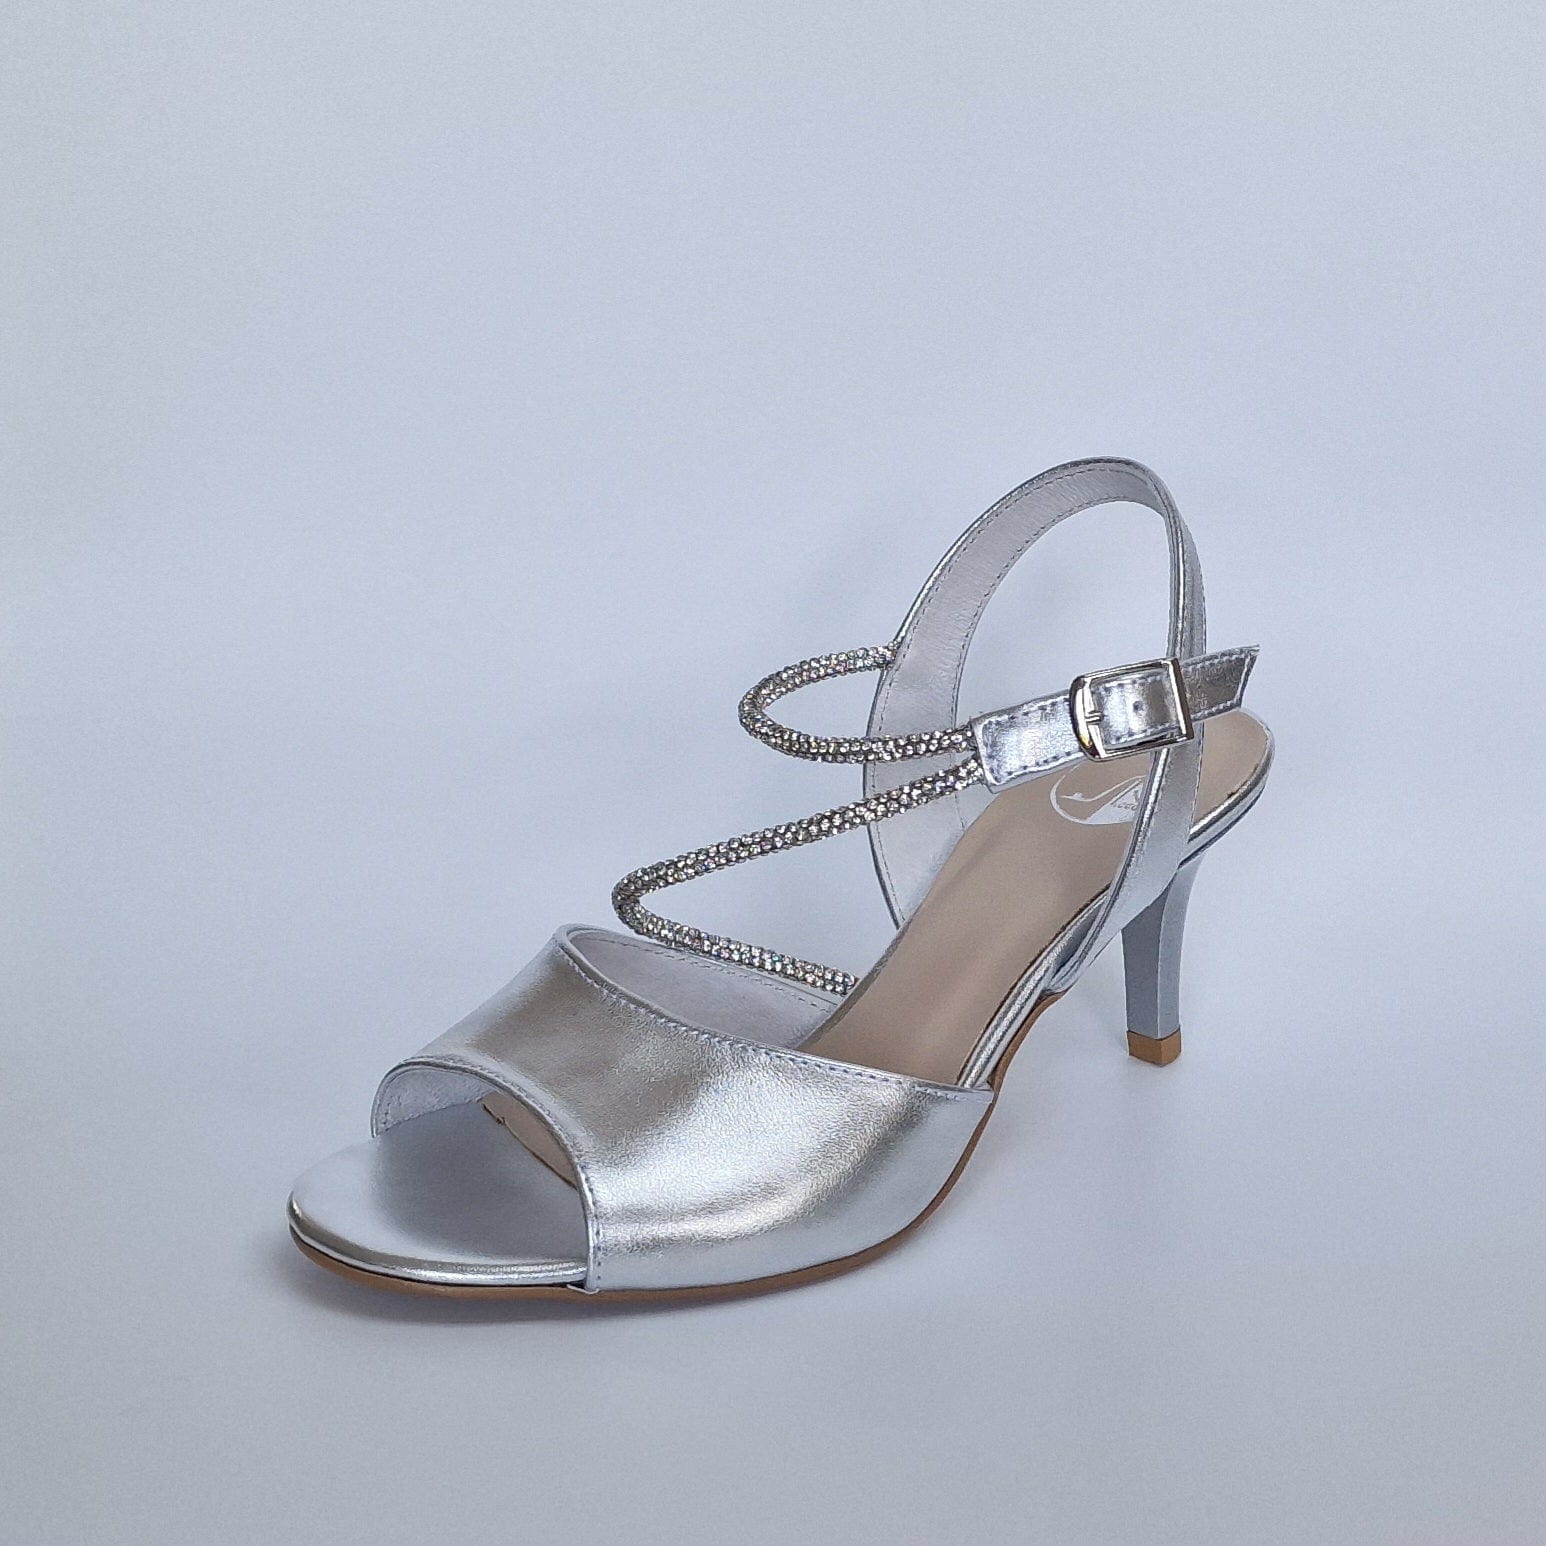 Buy Silver Heeled Sandals for Women by Sneak-a-Peek Online | Ajio.com